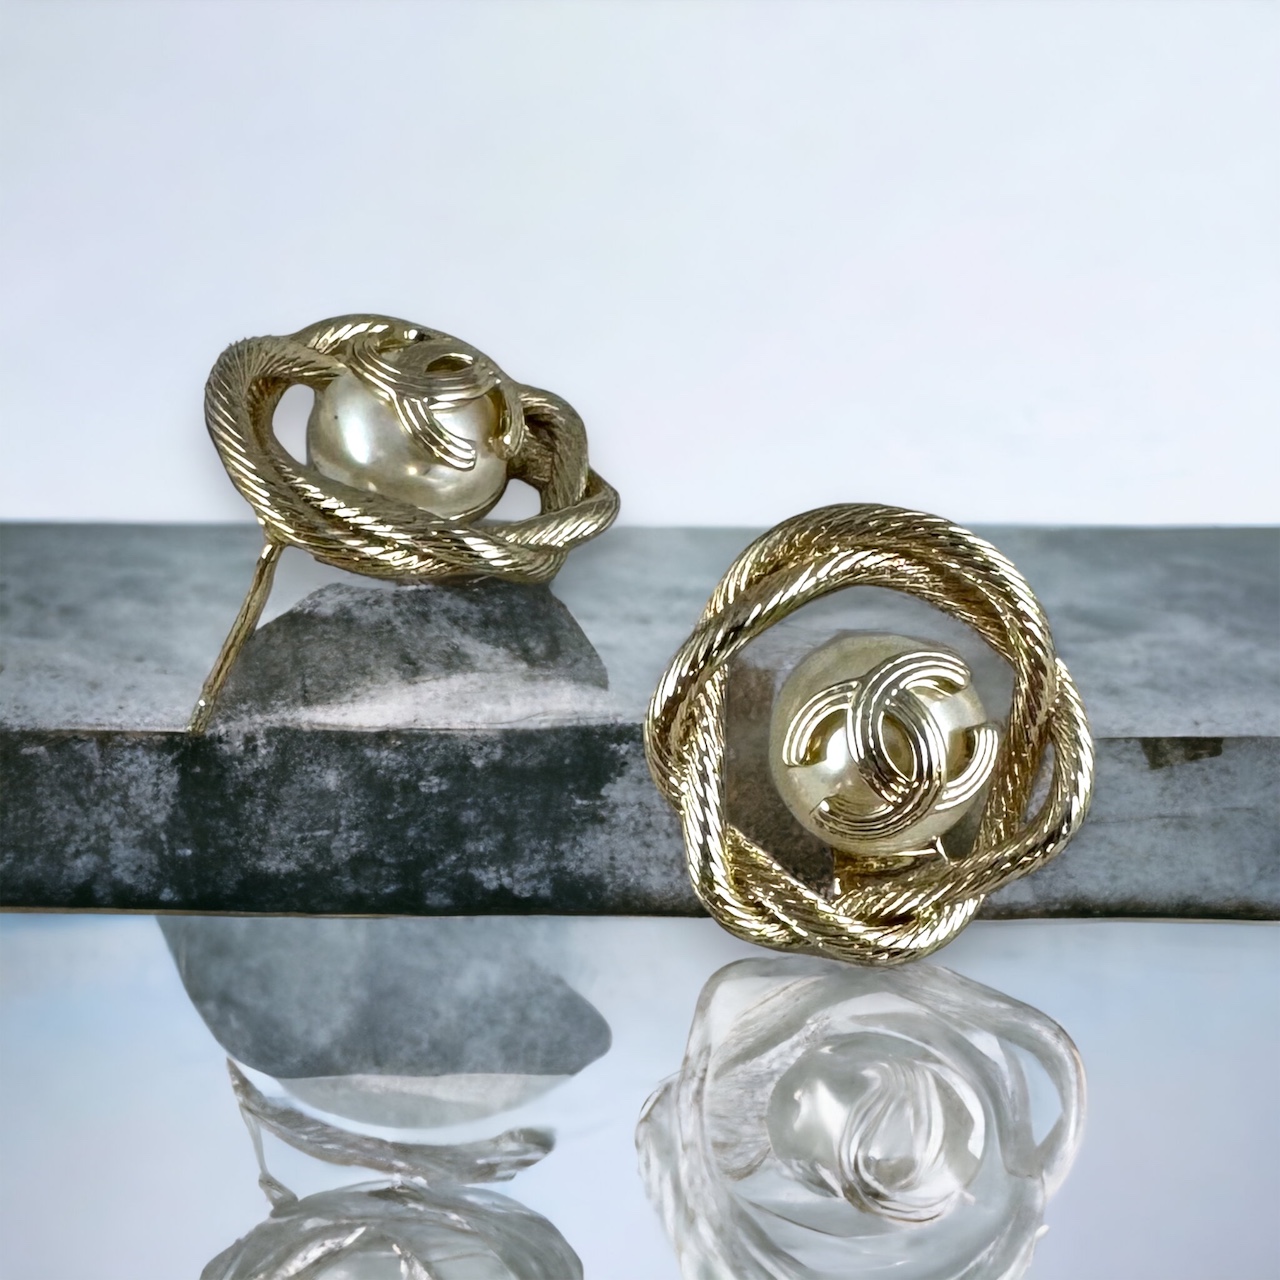 Chanel Pearl Halo Stud Earrings in Gold